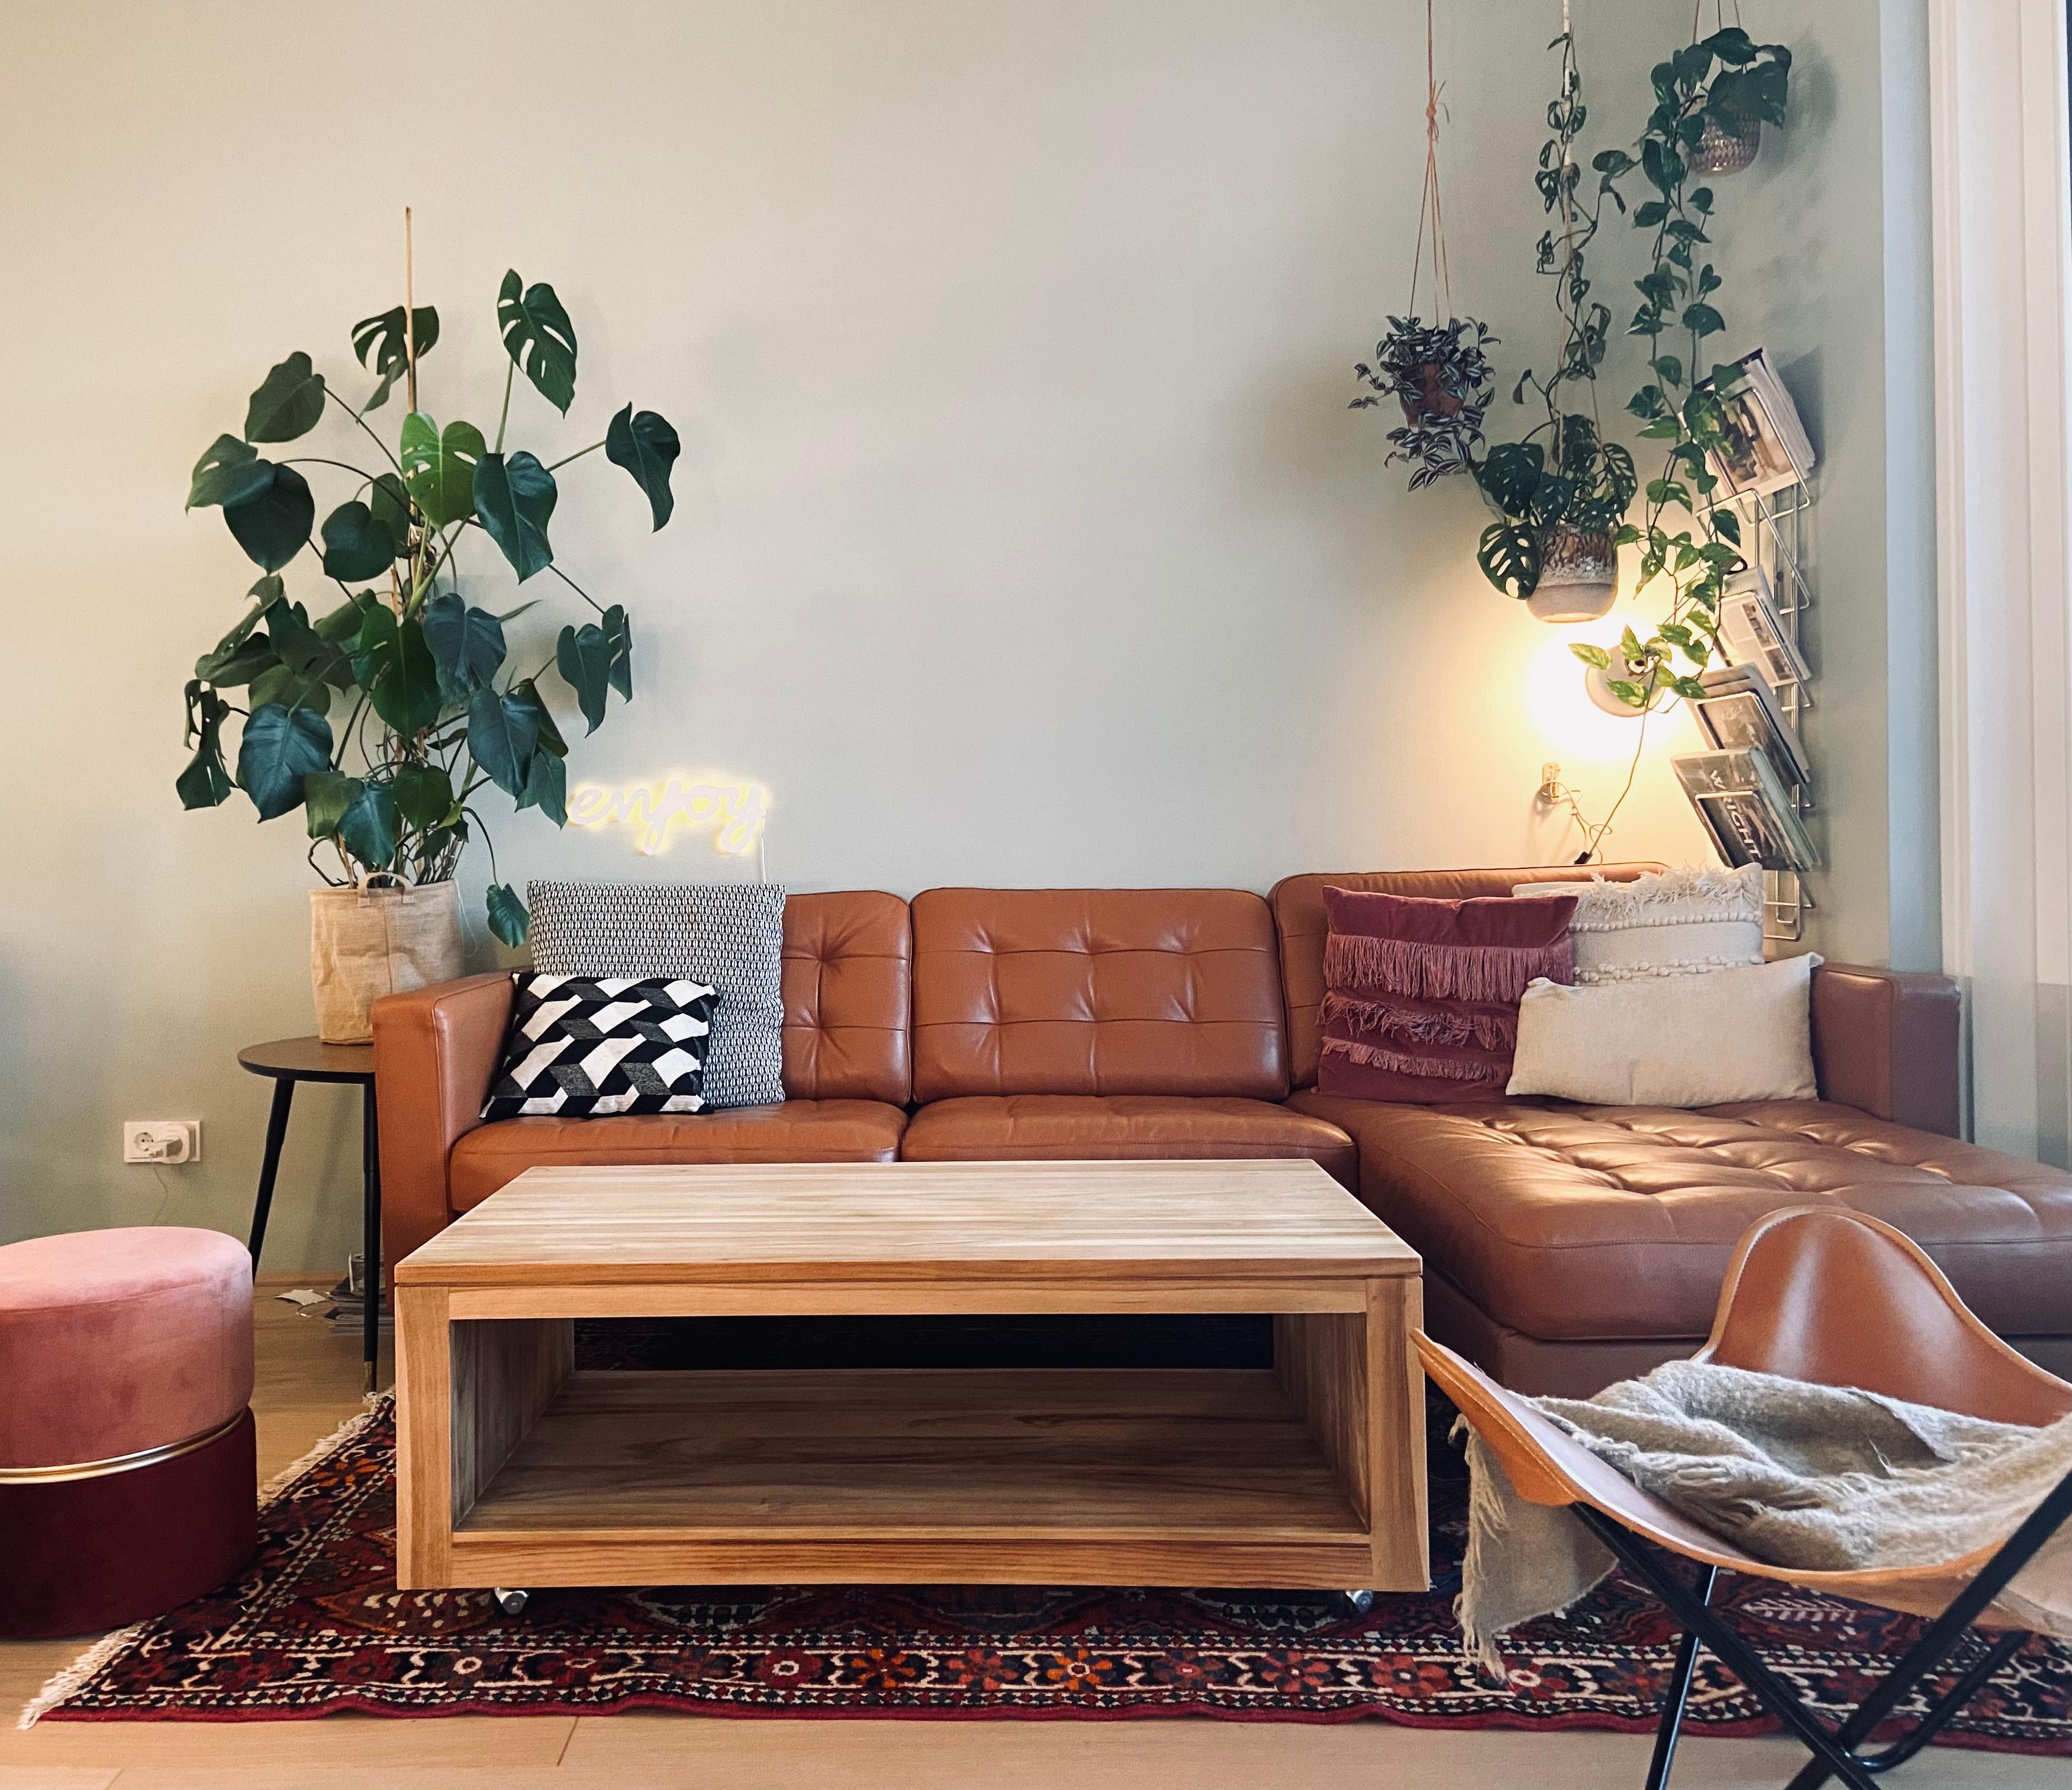 Wie findet ihr es mit hellem Tisch? 

#couchtisch #wohnzimmer #couch #plants 